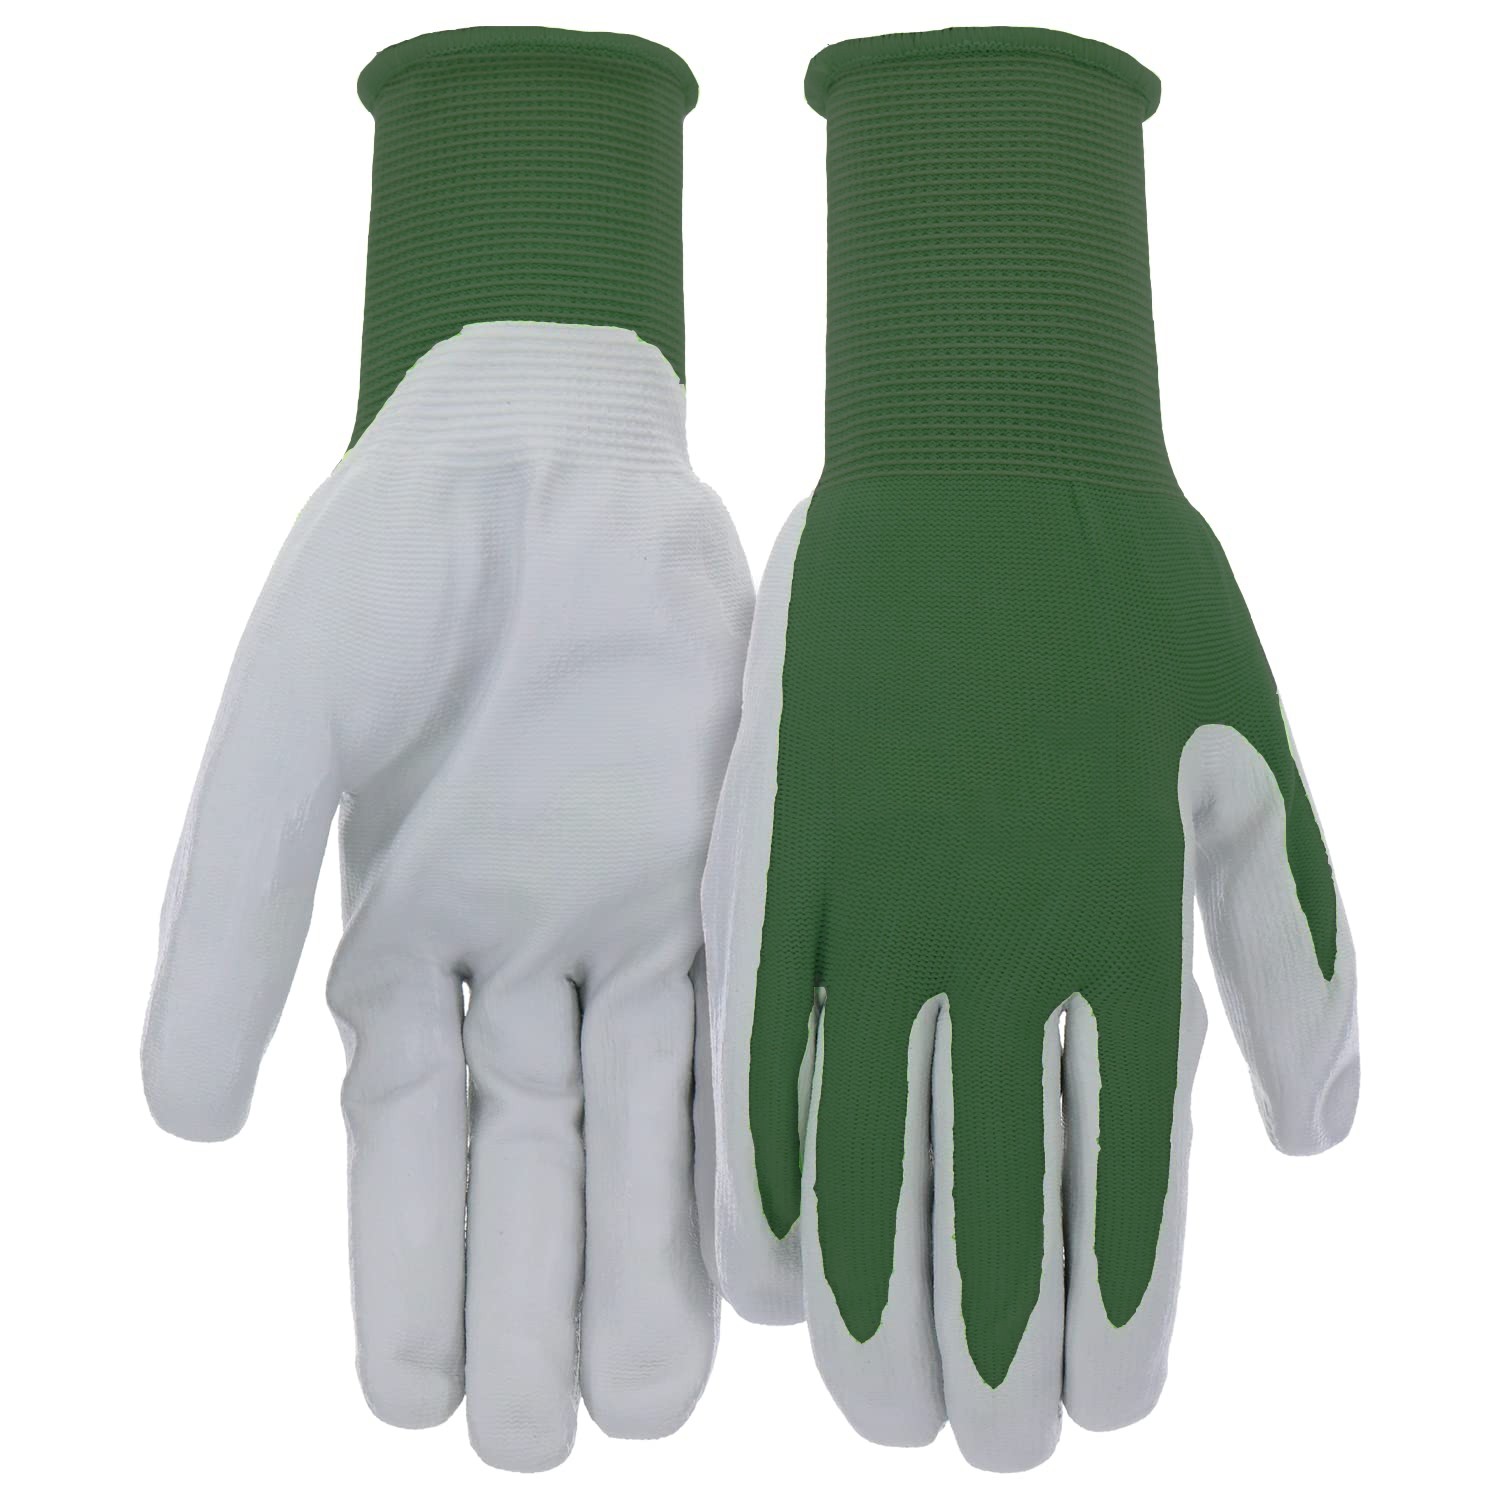 gloves for work